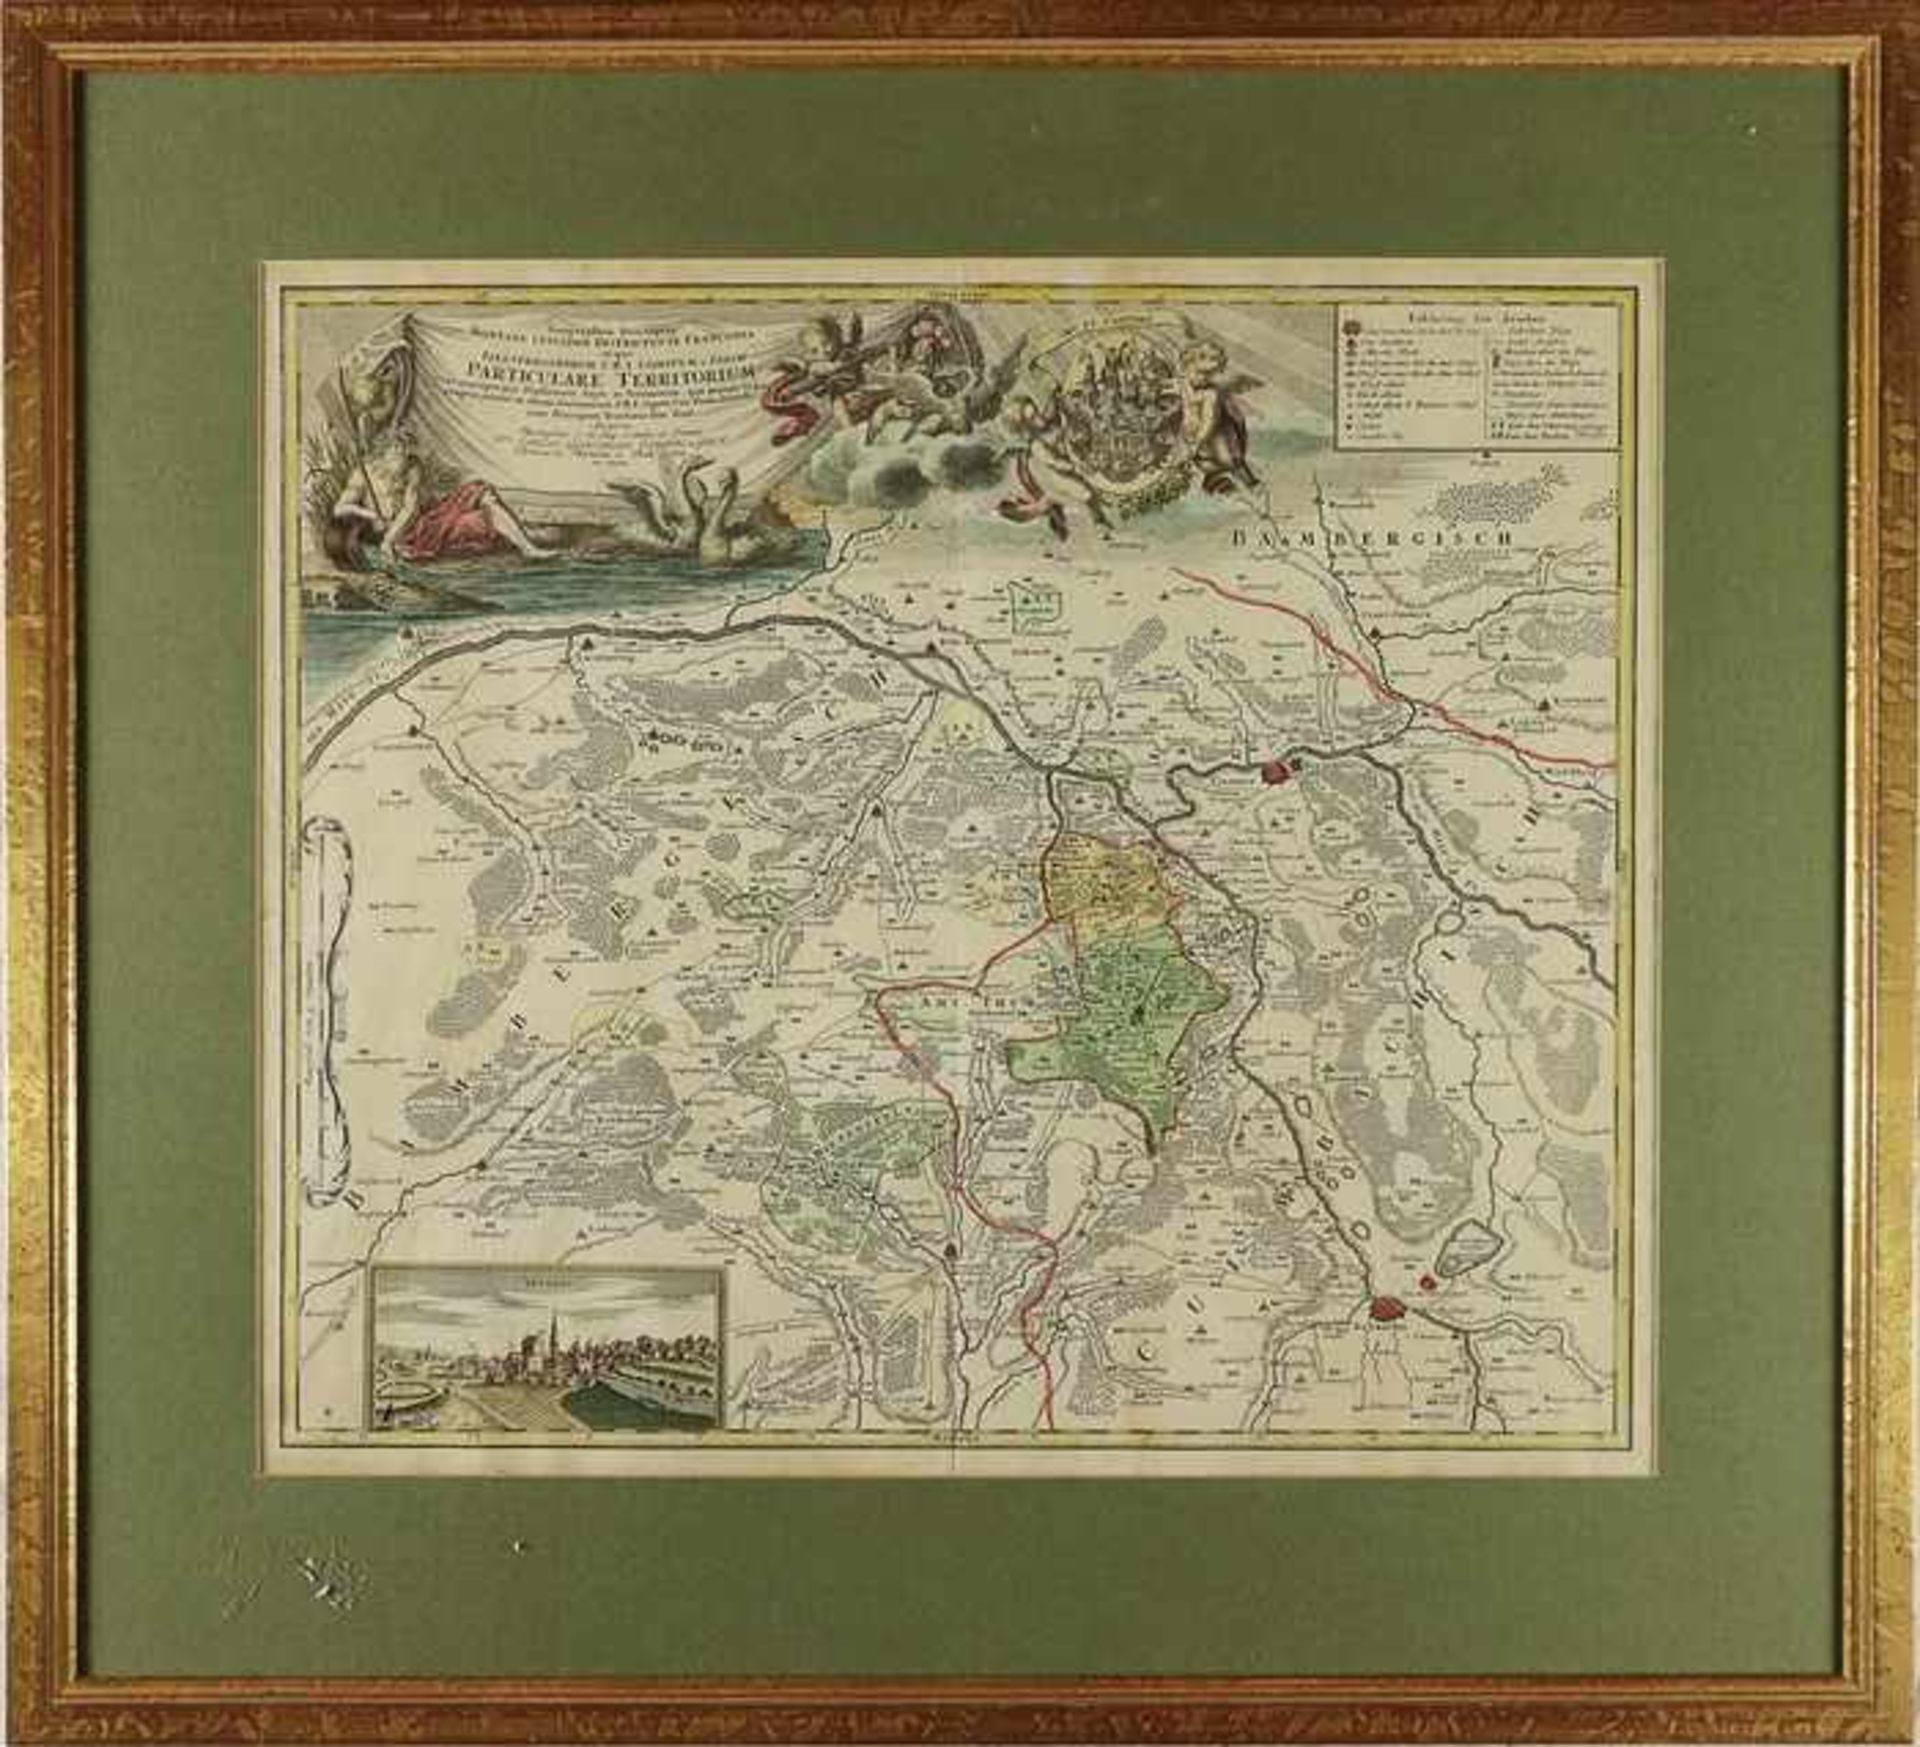 Homann - Frankenum 1720, "Geographica Discriptio...Particulare Territorium...", Kupferstichkarte,